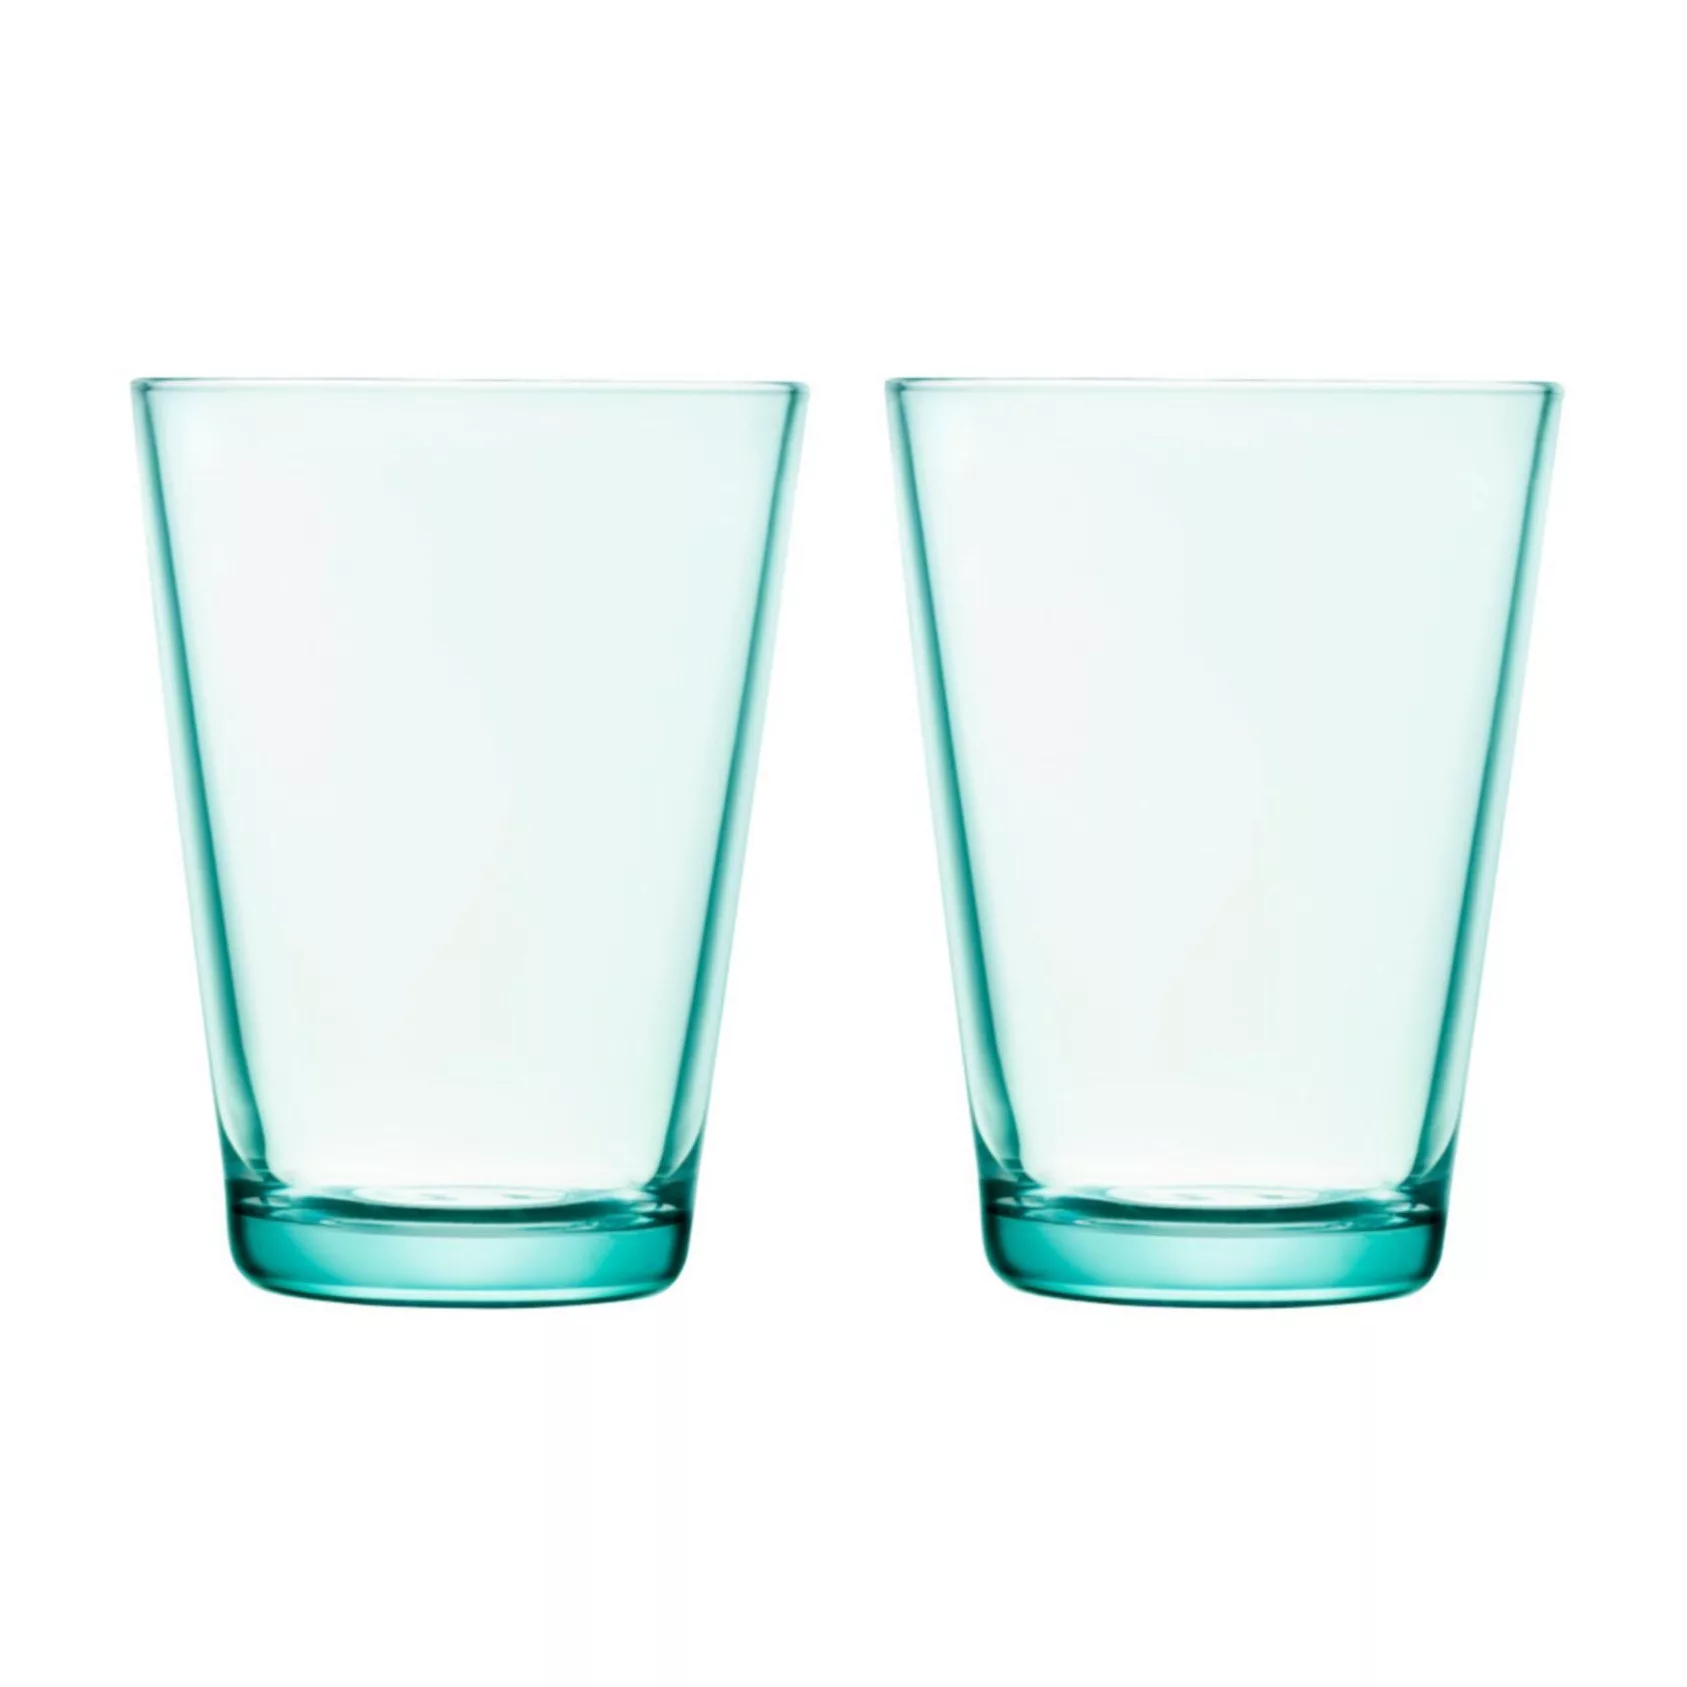 iittala - Kartio Longdrink Glas 2er Set 40cl - wassergrün/H 12cm/0,4L günstig online kaufen